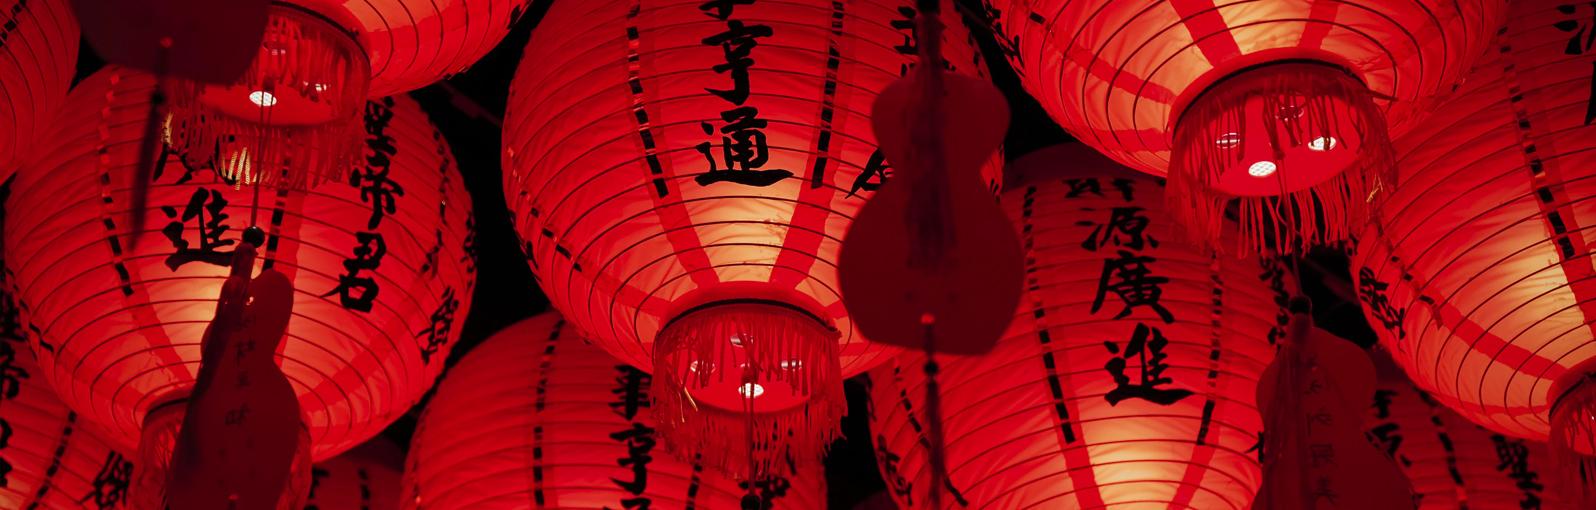 Red Chinese lanterns